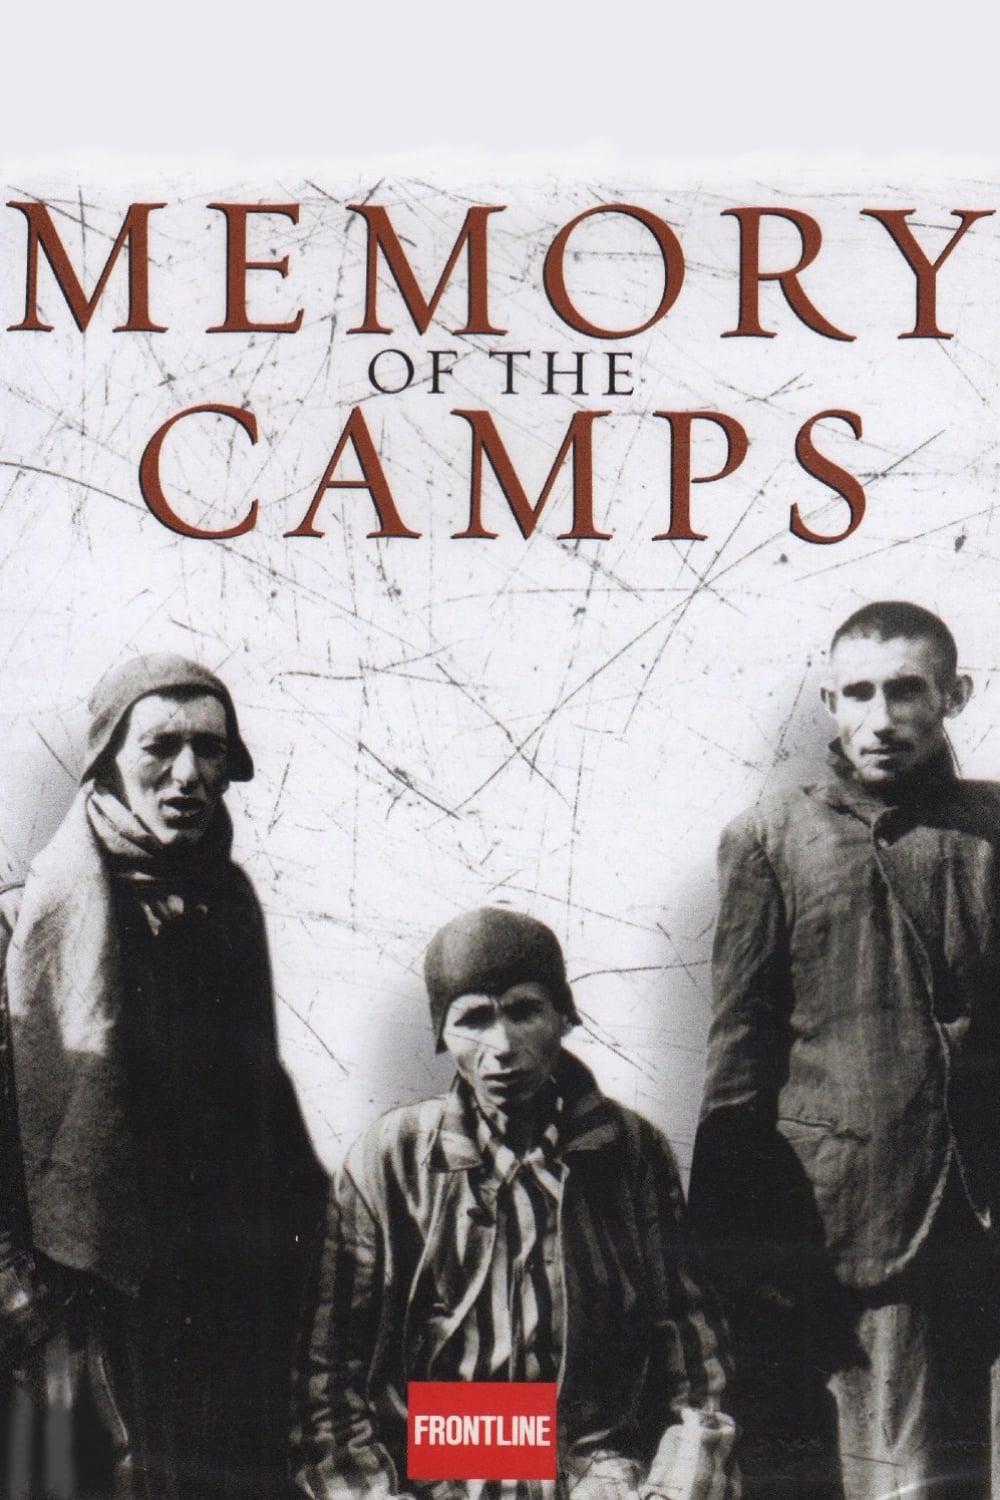 German Concentration Camps Factual Survey poster